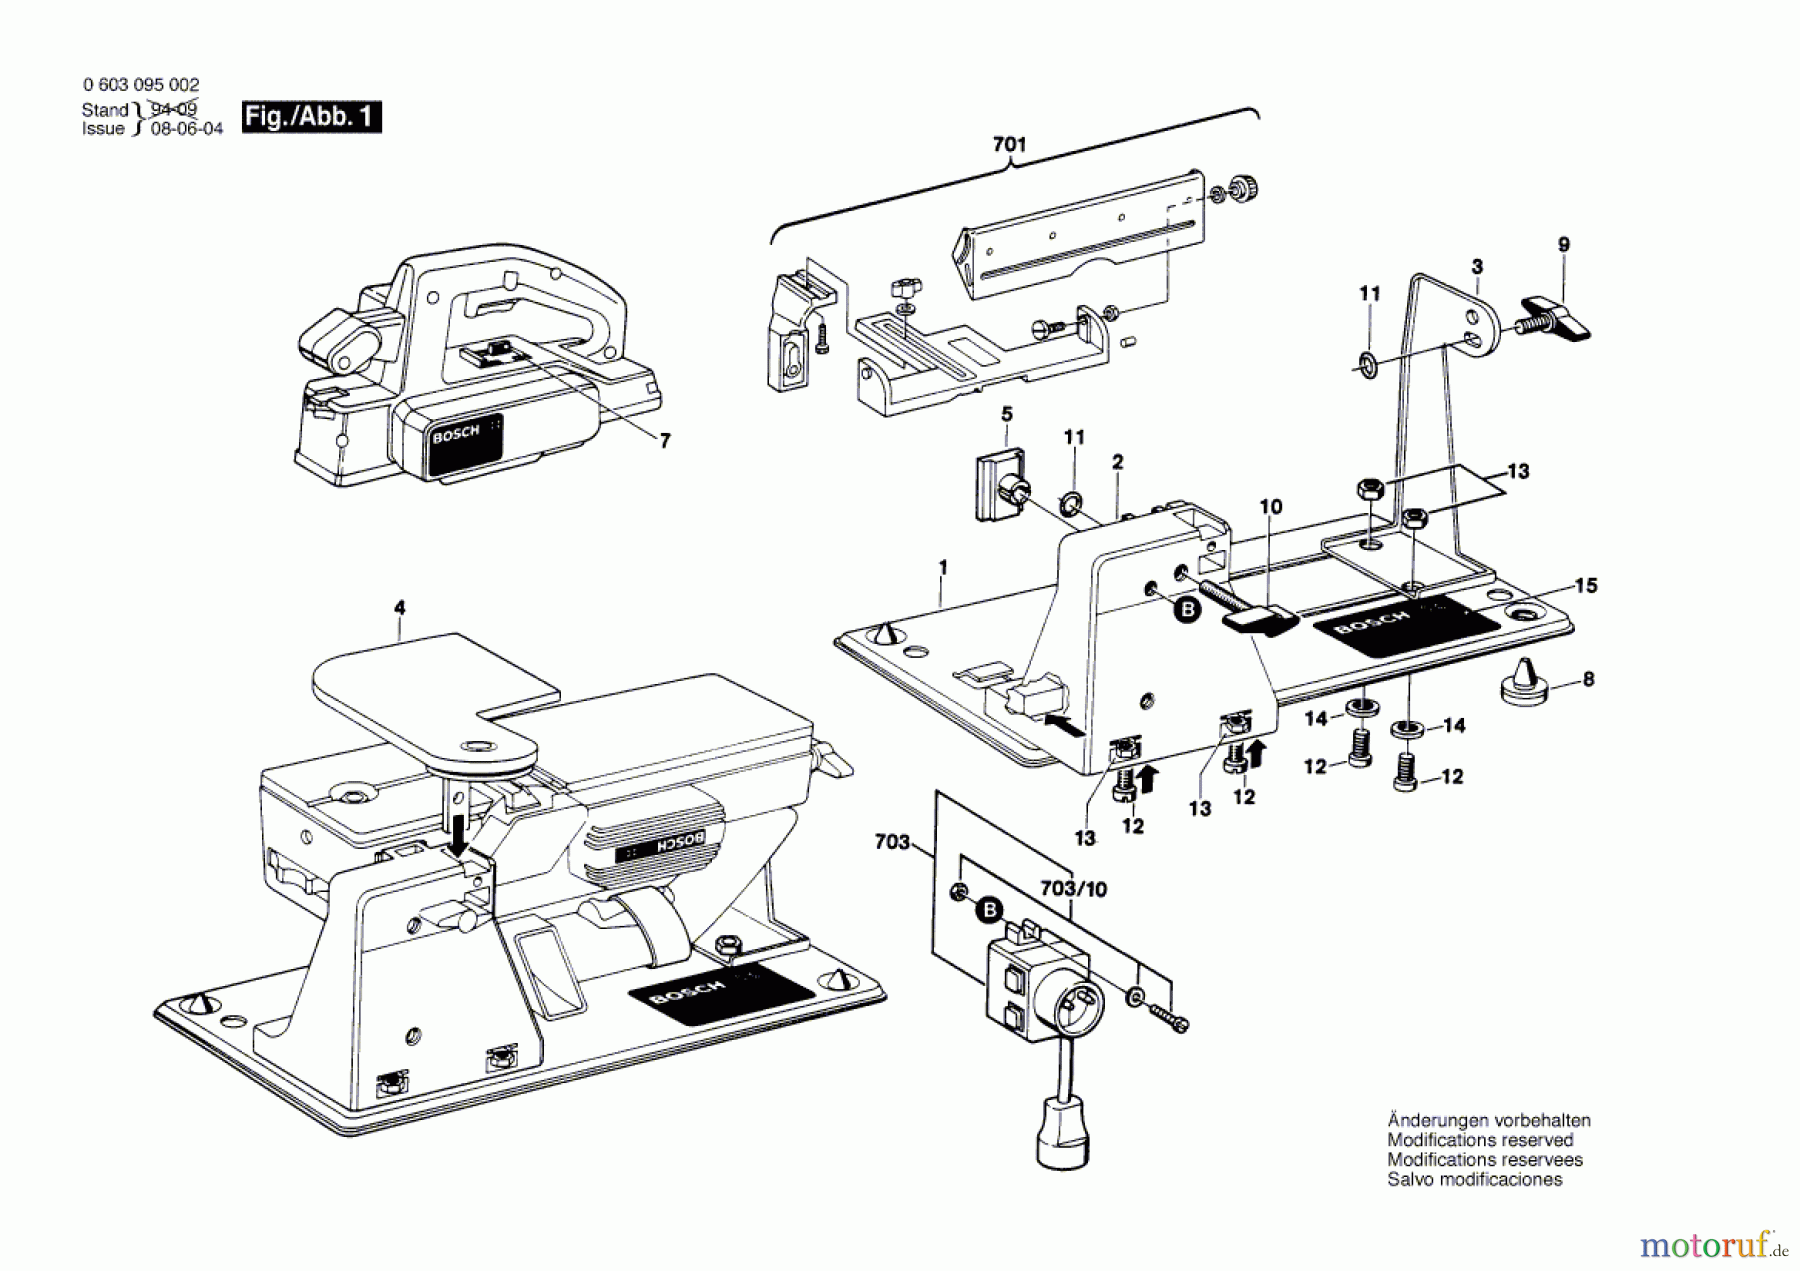  Bosch Werkzeug Untergestell UG 37 Seite 1